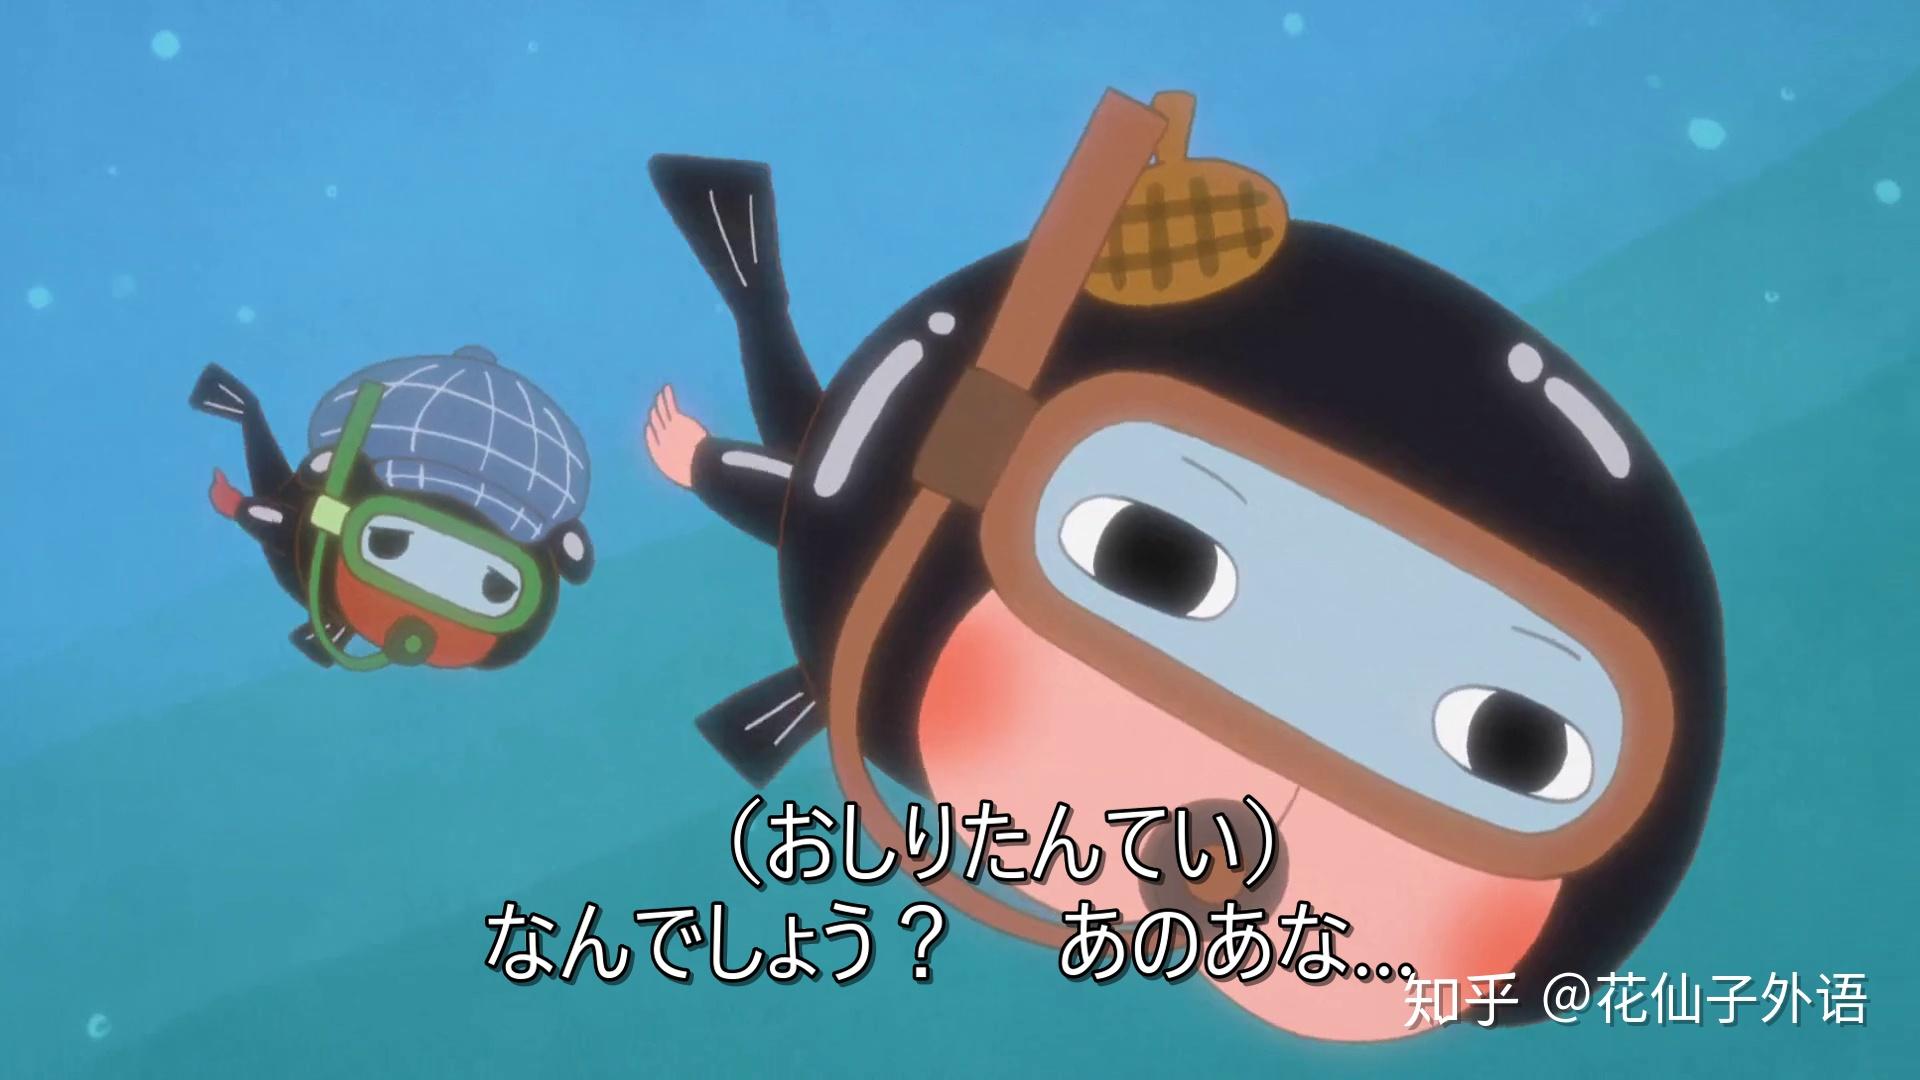 日语动画片《屁股侦探》幼儿和低年级学生之间的人气动画 - 知乎